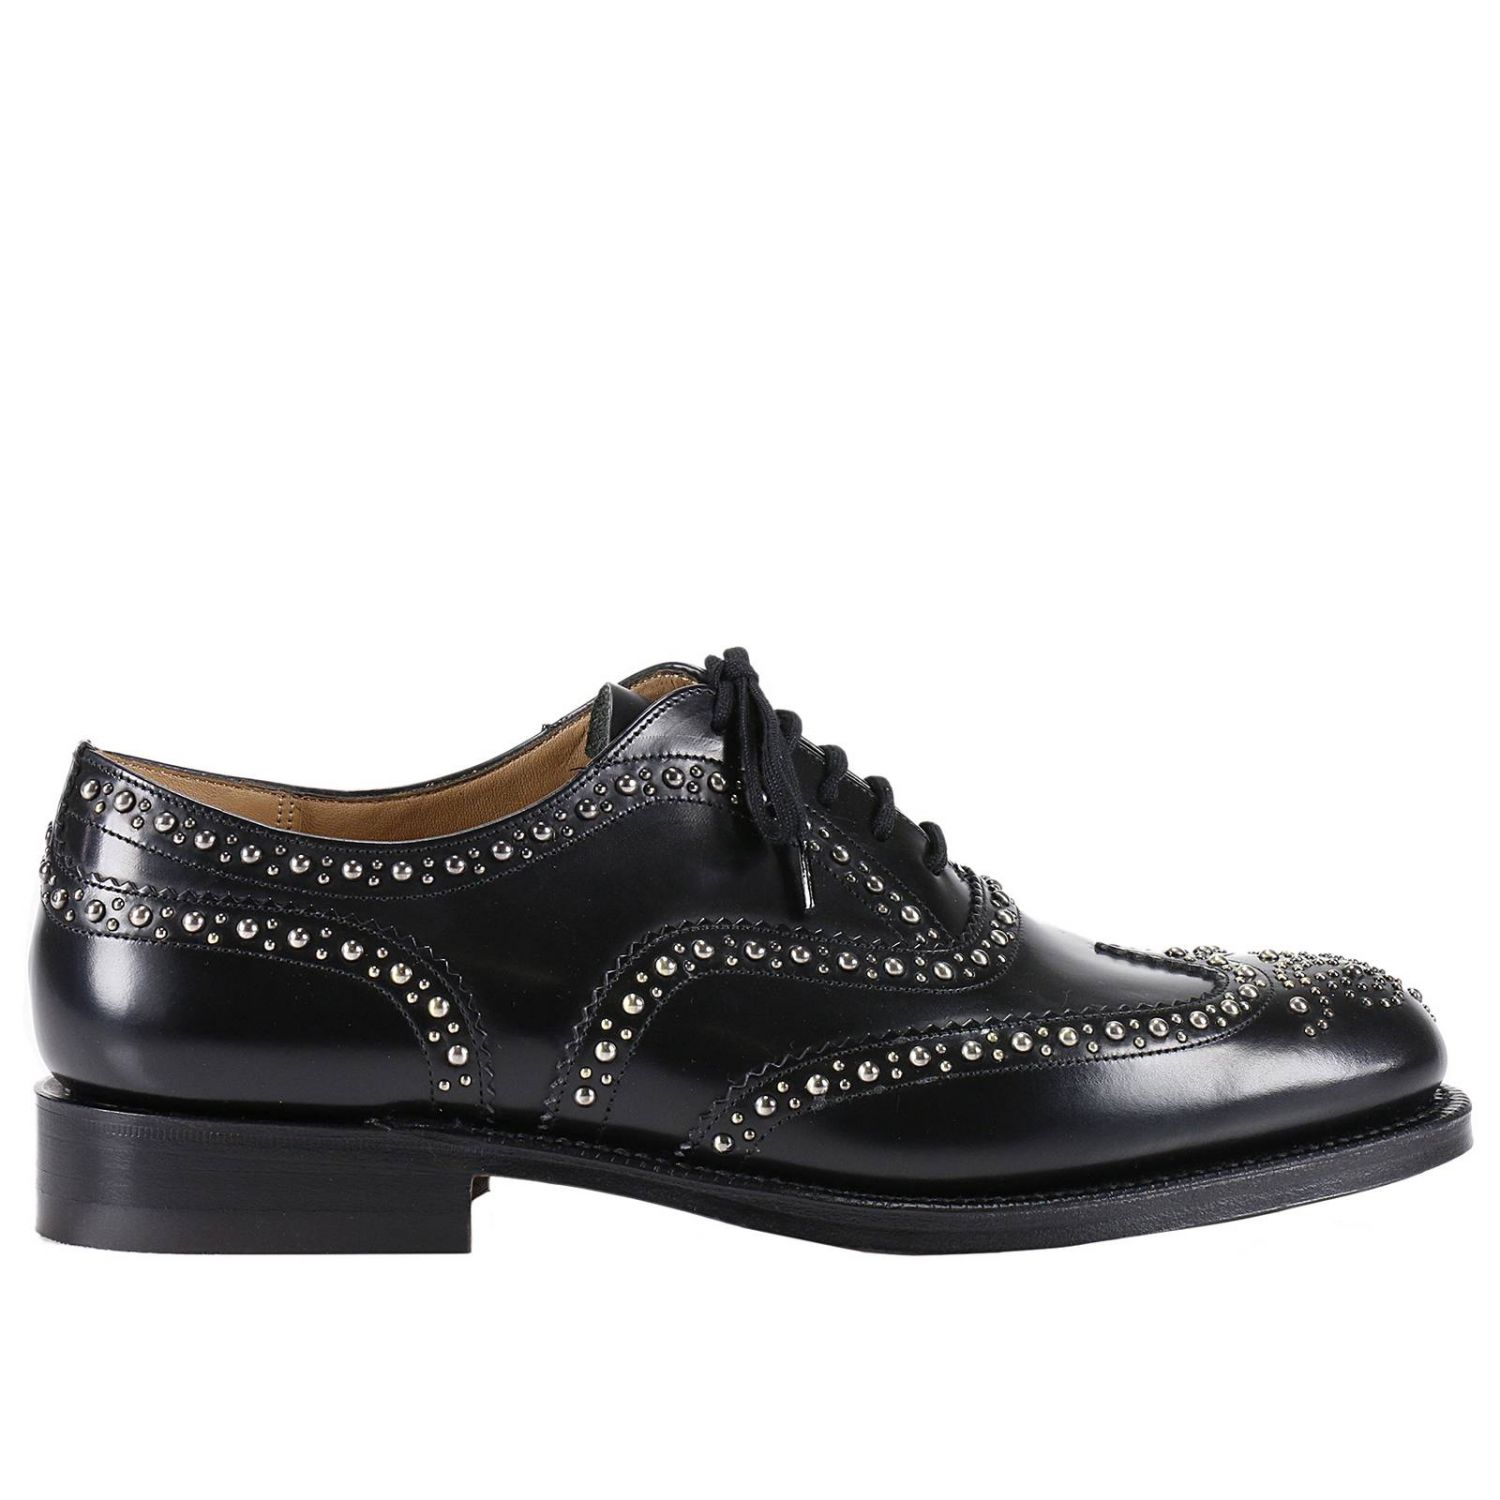 CHURCH'S: Shoes men | Brogue Shoes Church's Men Black | Brogue Shoes ...